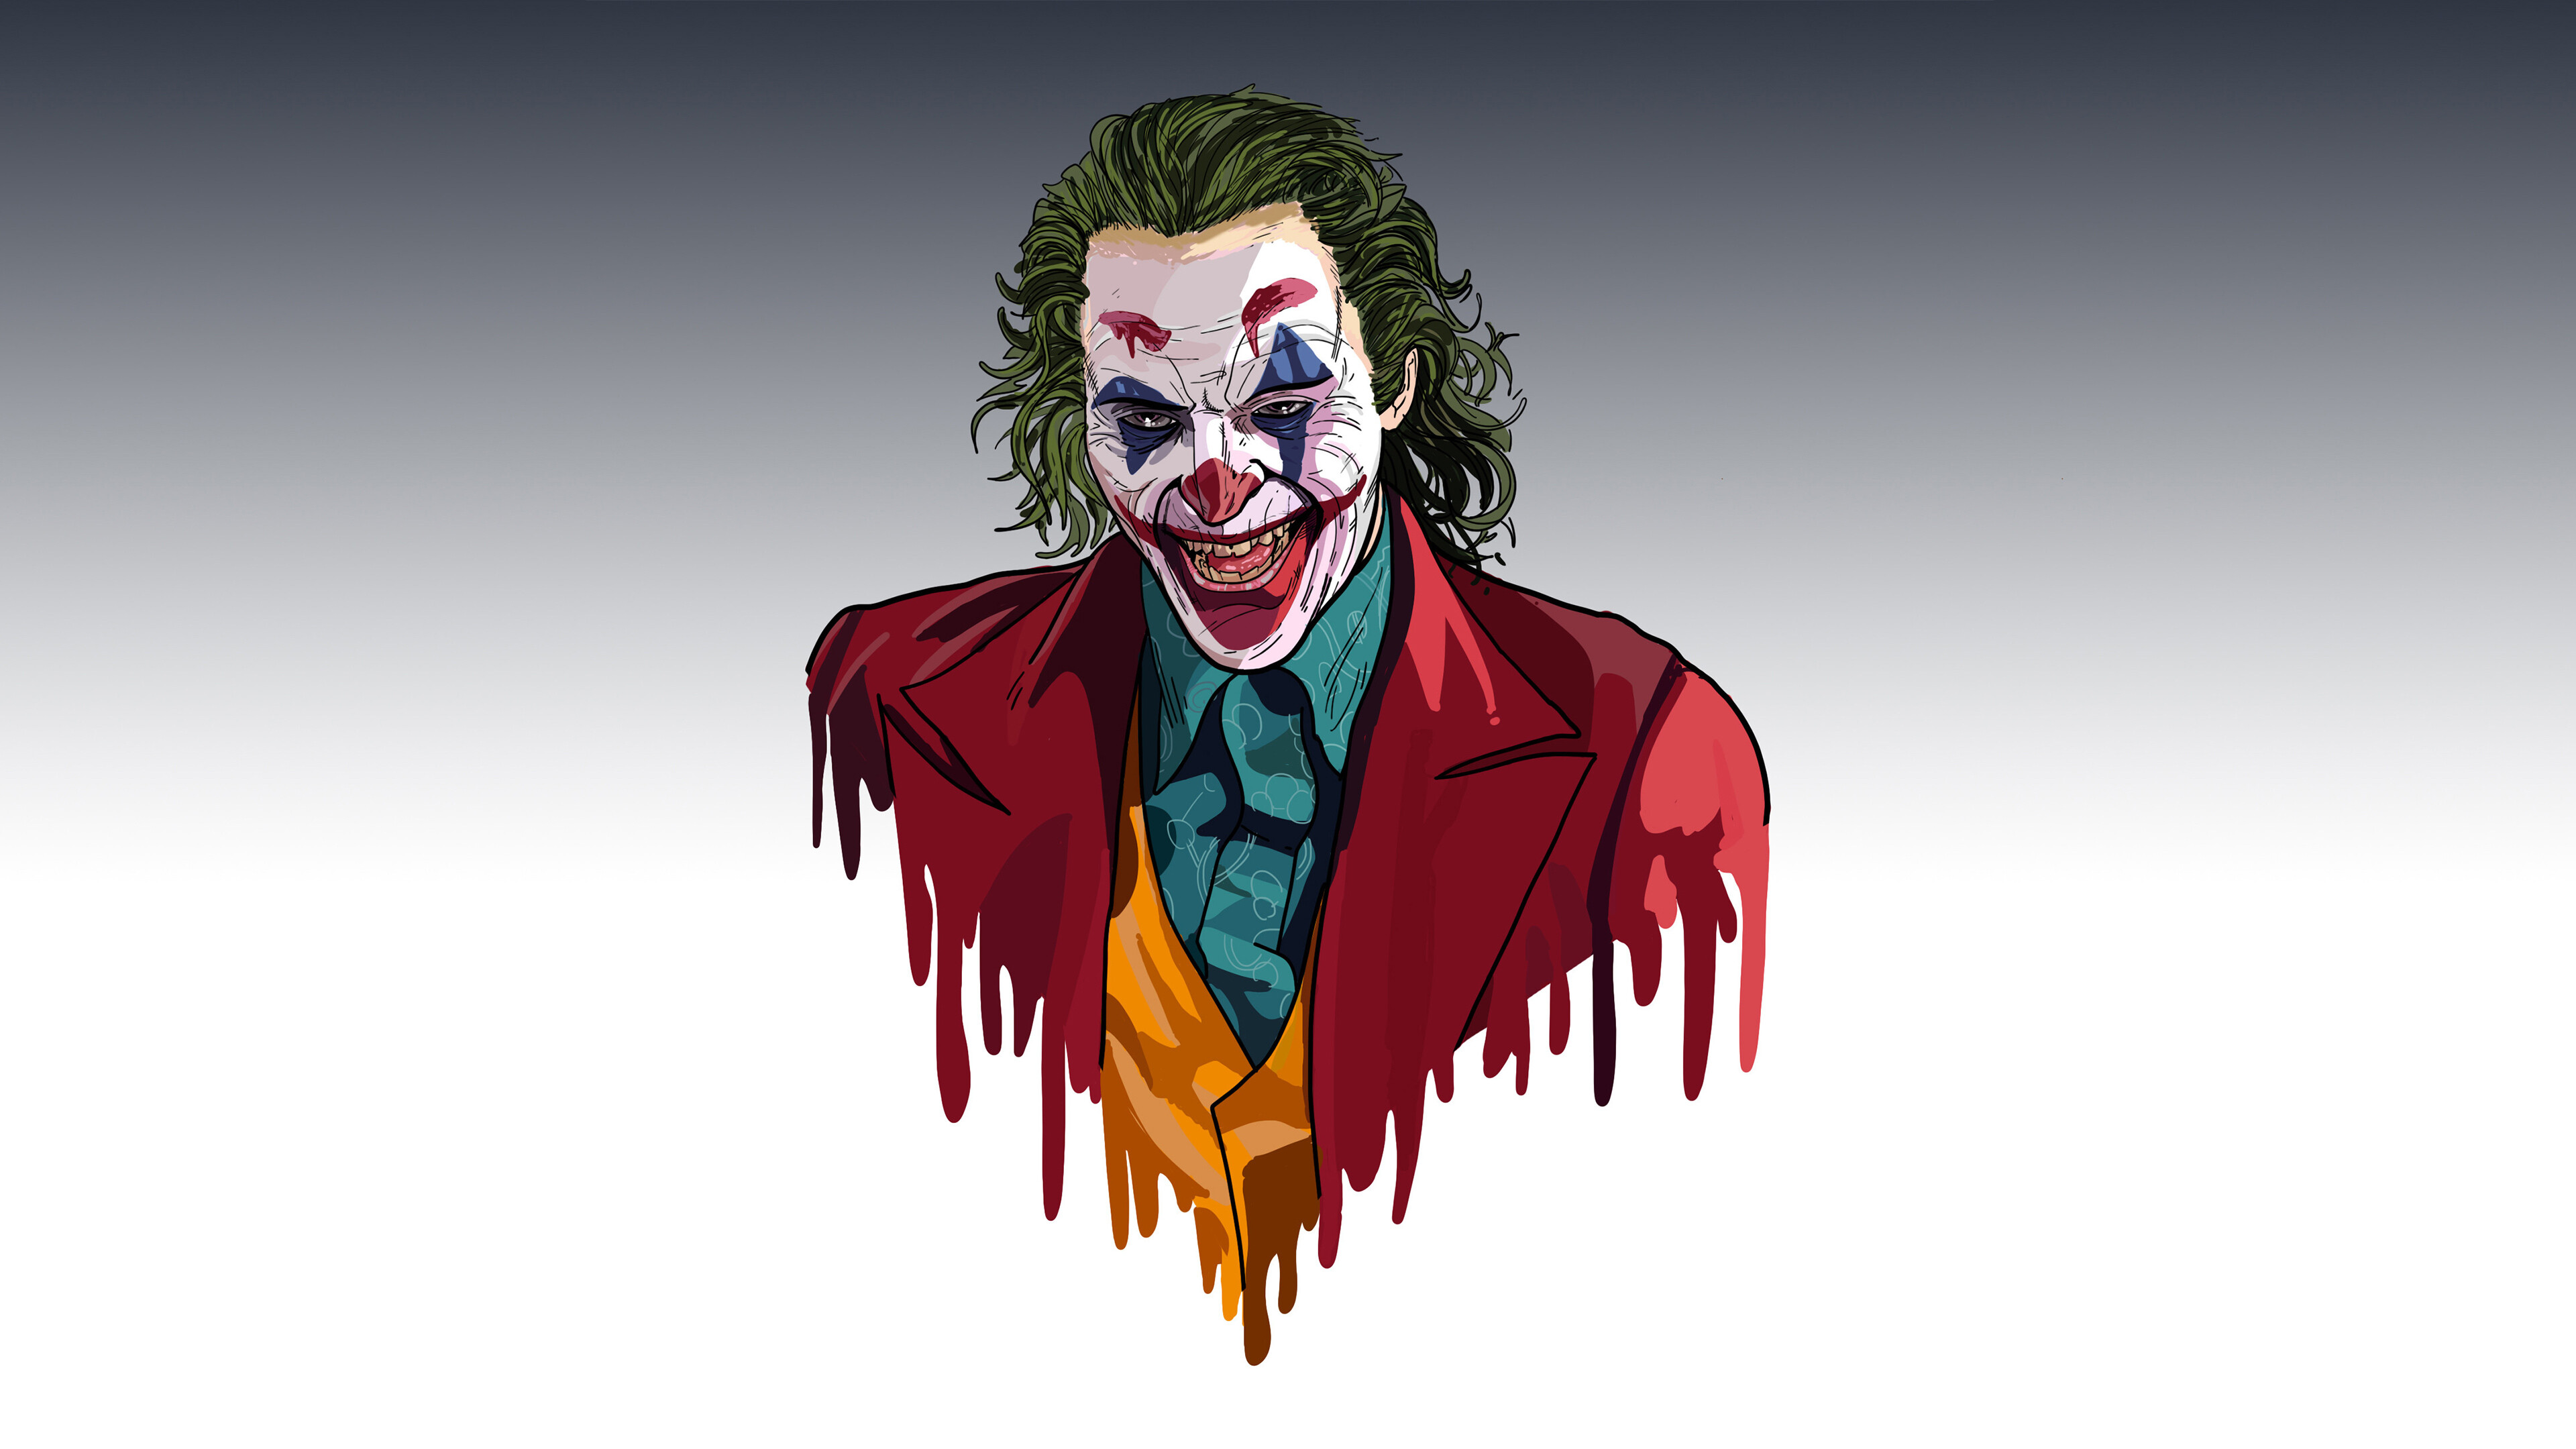 Joker, DC Comics, Gotham City, Unpredictable chaos, 3840x2160 4K Desktop